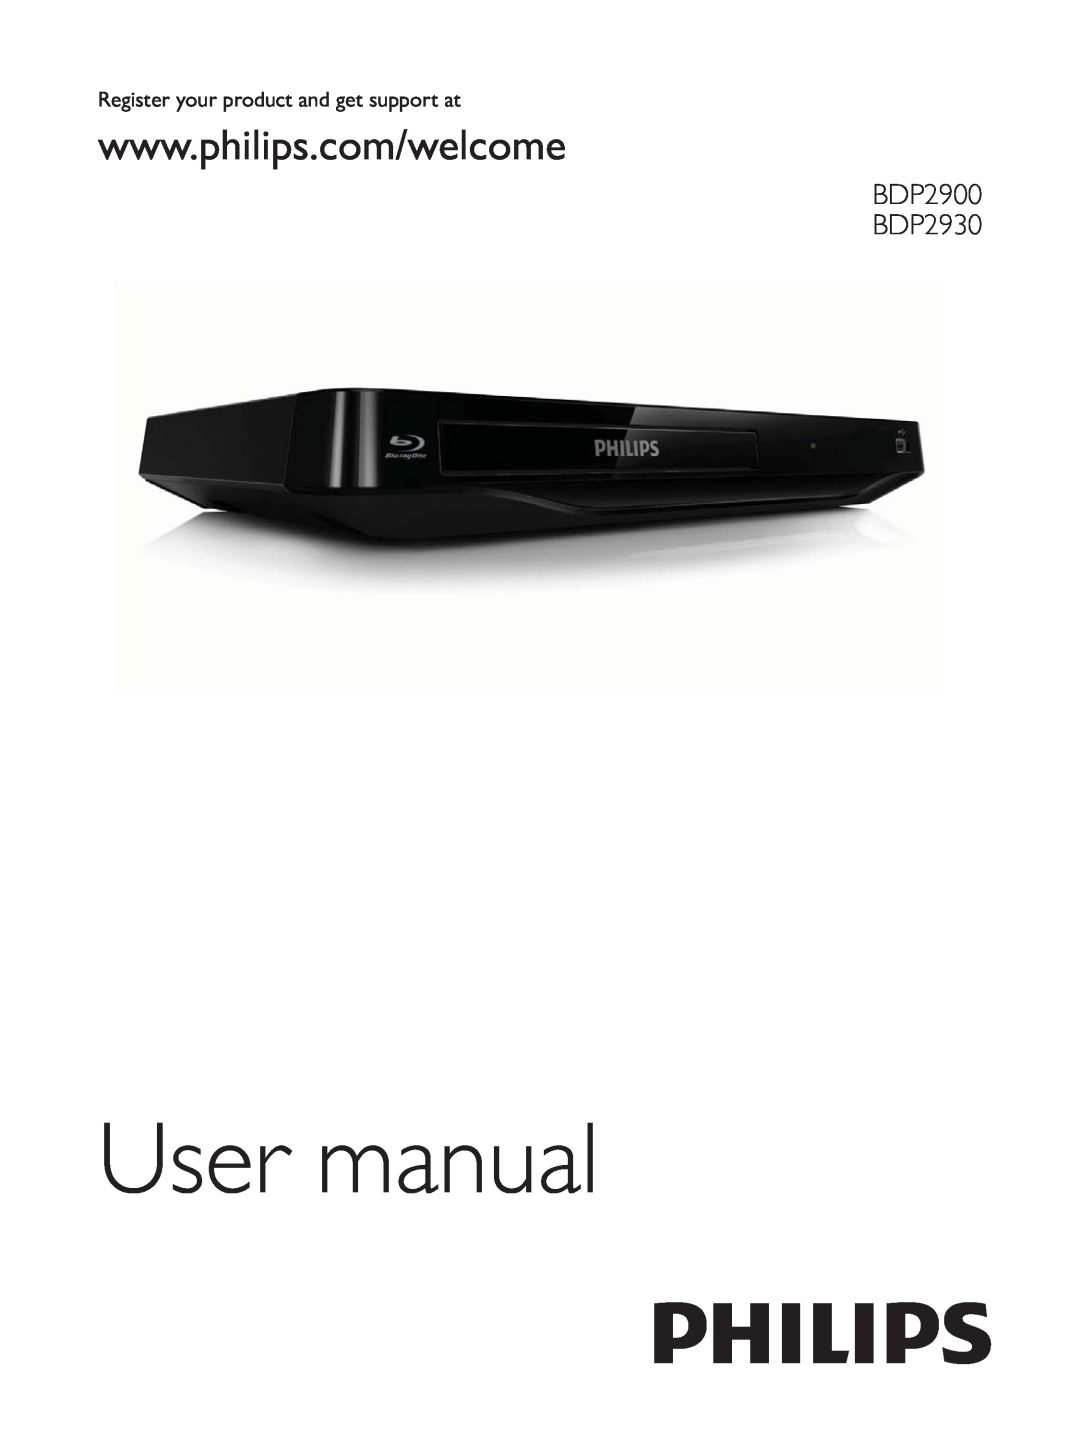 Philips user manual User manual, BDP2900 BDP2930 